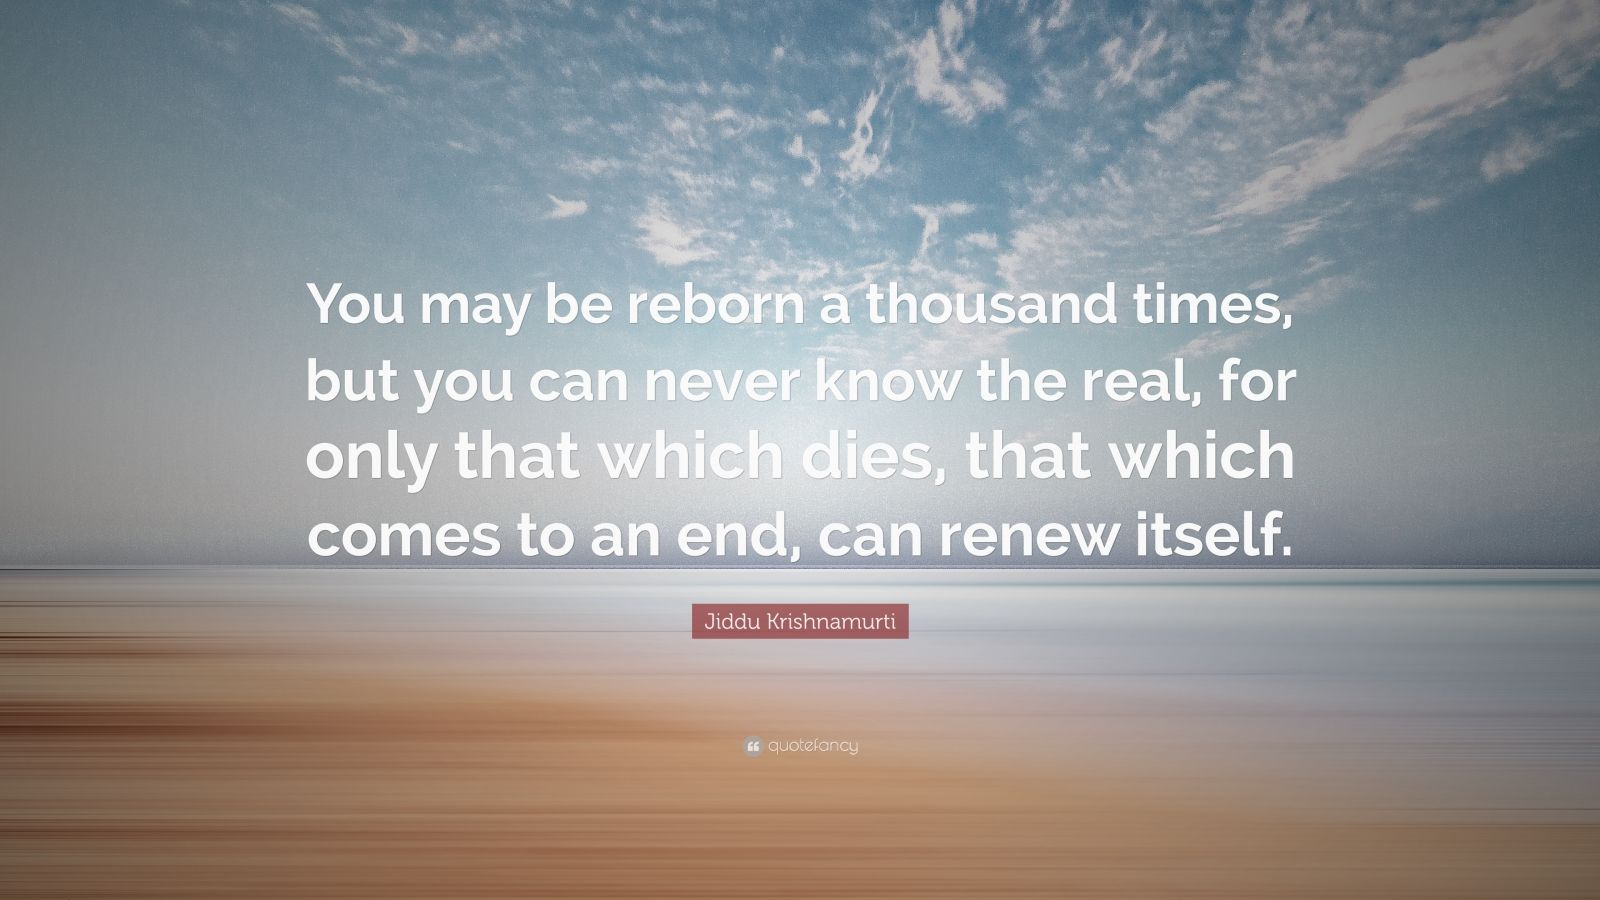 Jiddu Krishnamurti Quote: “You may be reborn a thousand times, but you ...